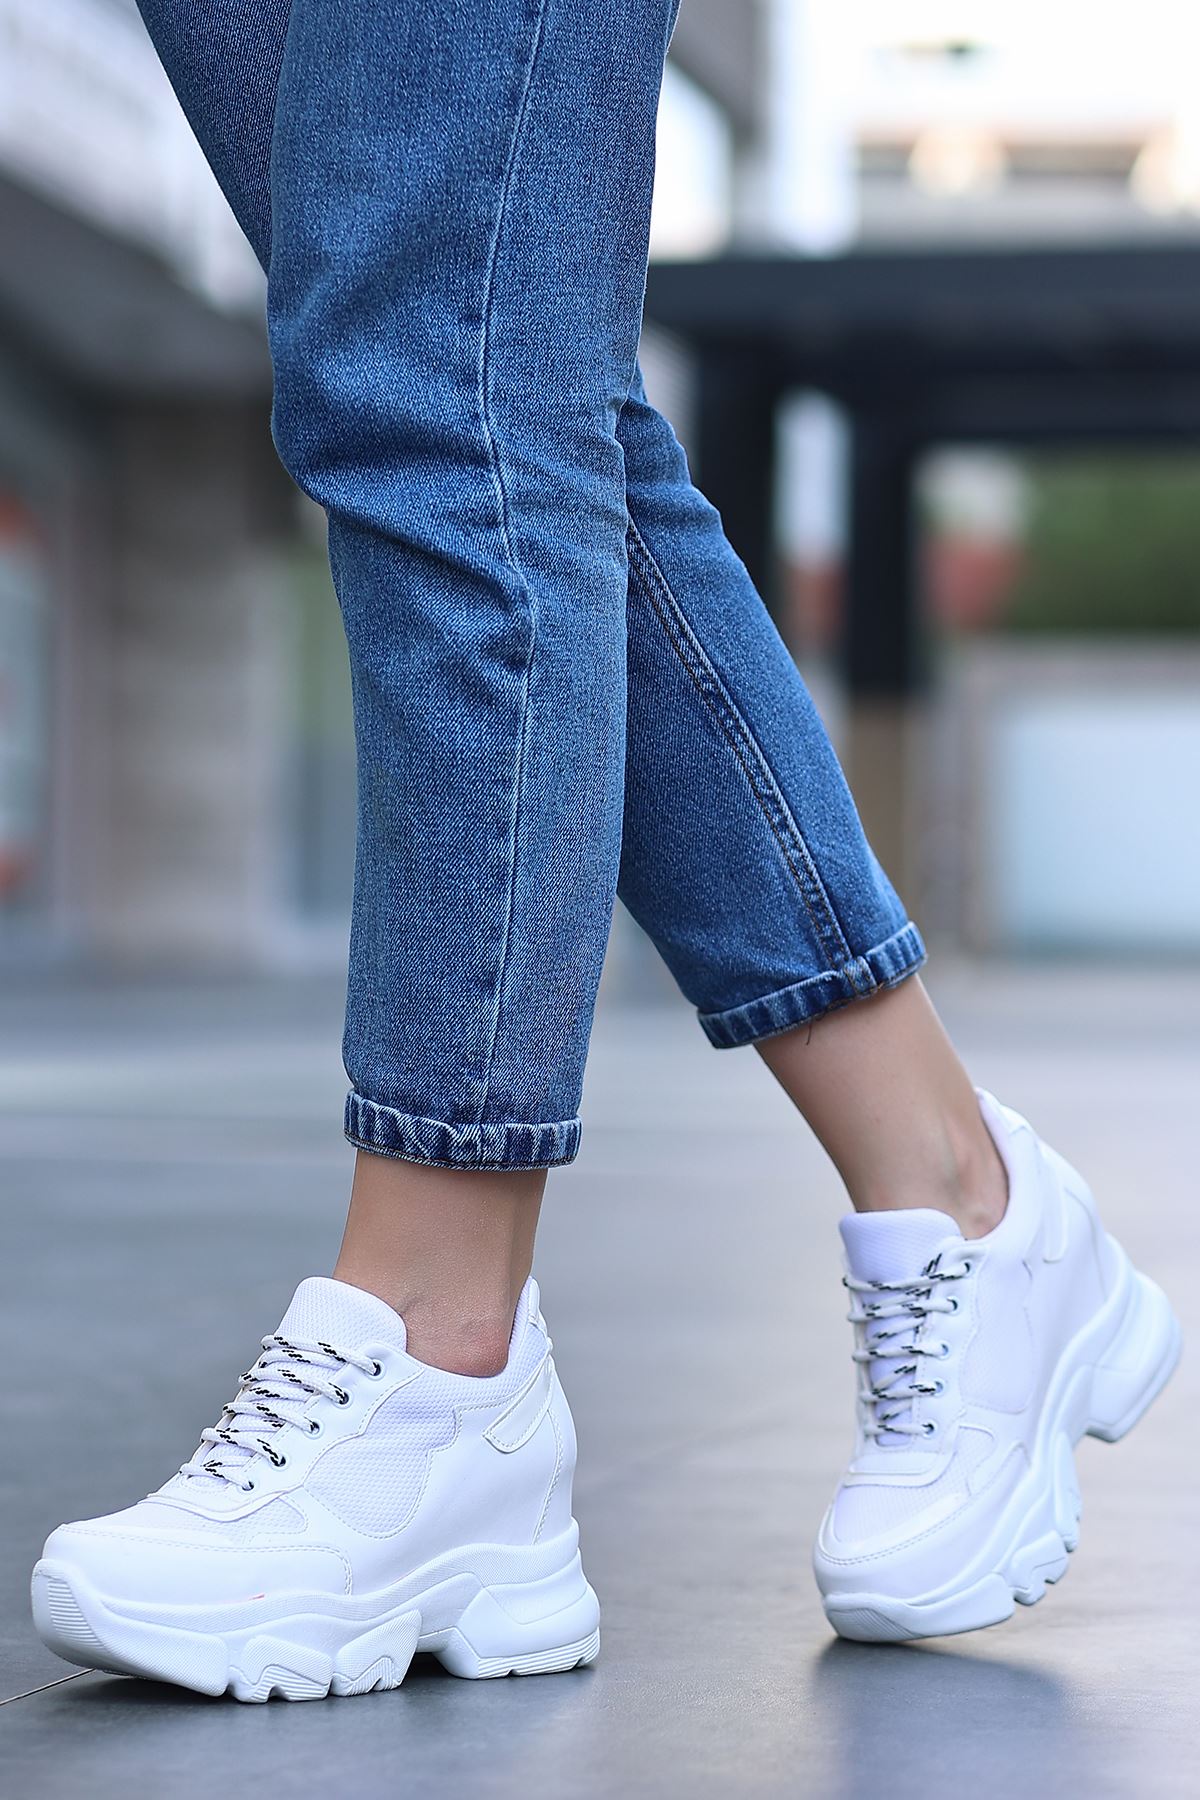 Ricka Beyaz Fileli Beyaz Hologram Mat Deri Bağcık Detay Yüksek Taban Kadın Spor Ayakkabı